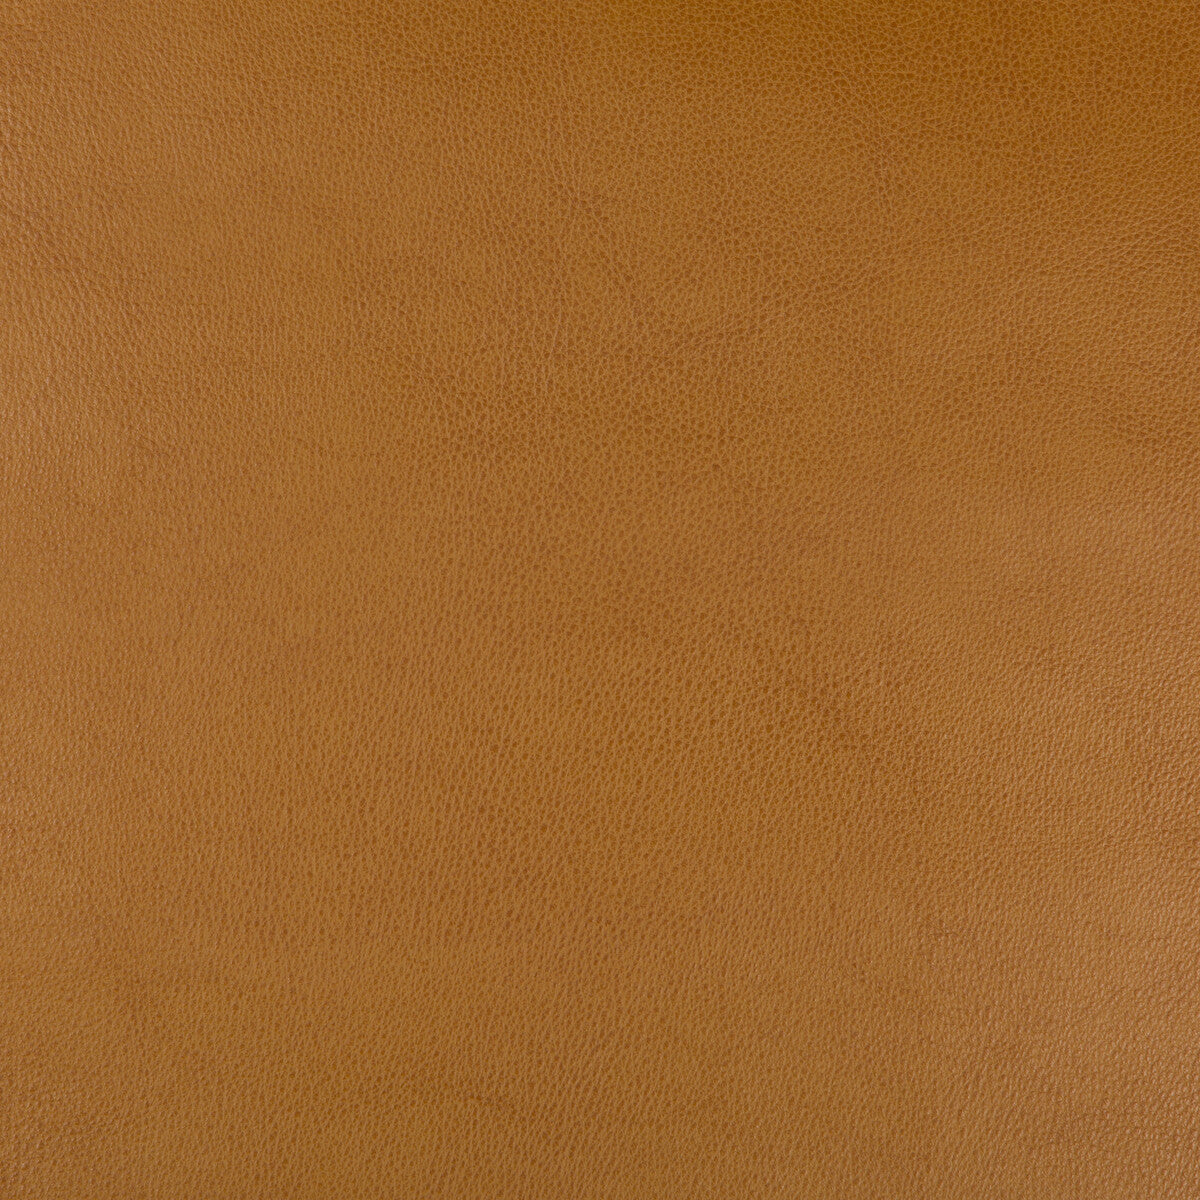 Kravet Design fabric in dust-624 color - pattern DUST.624.0 - by Kravet Design